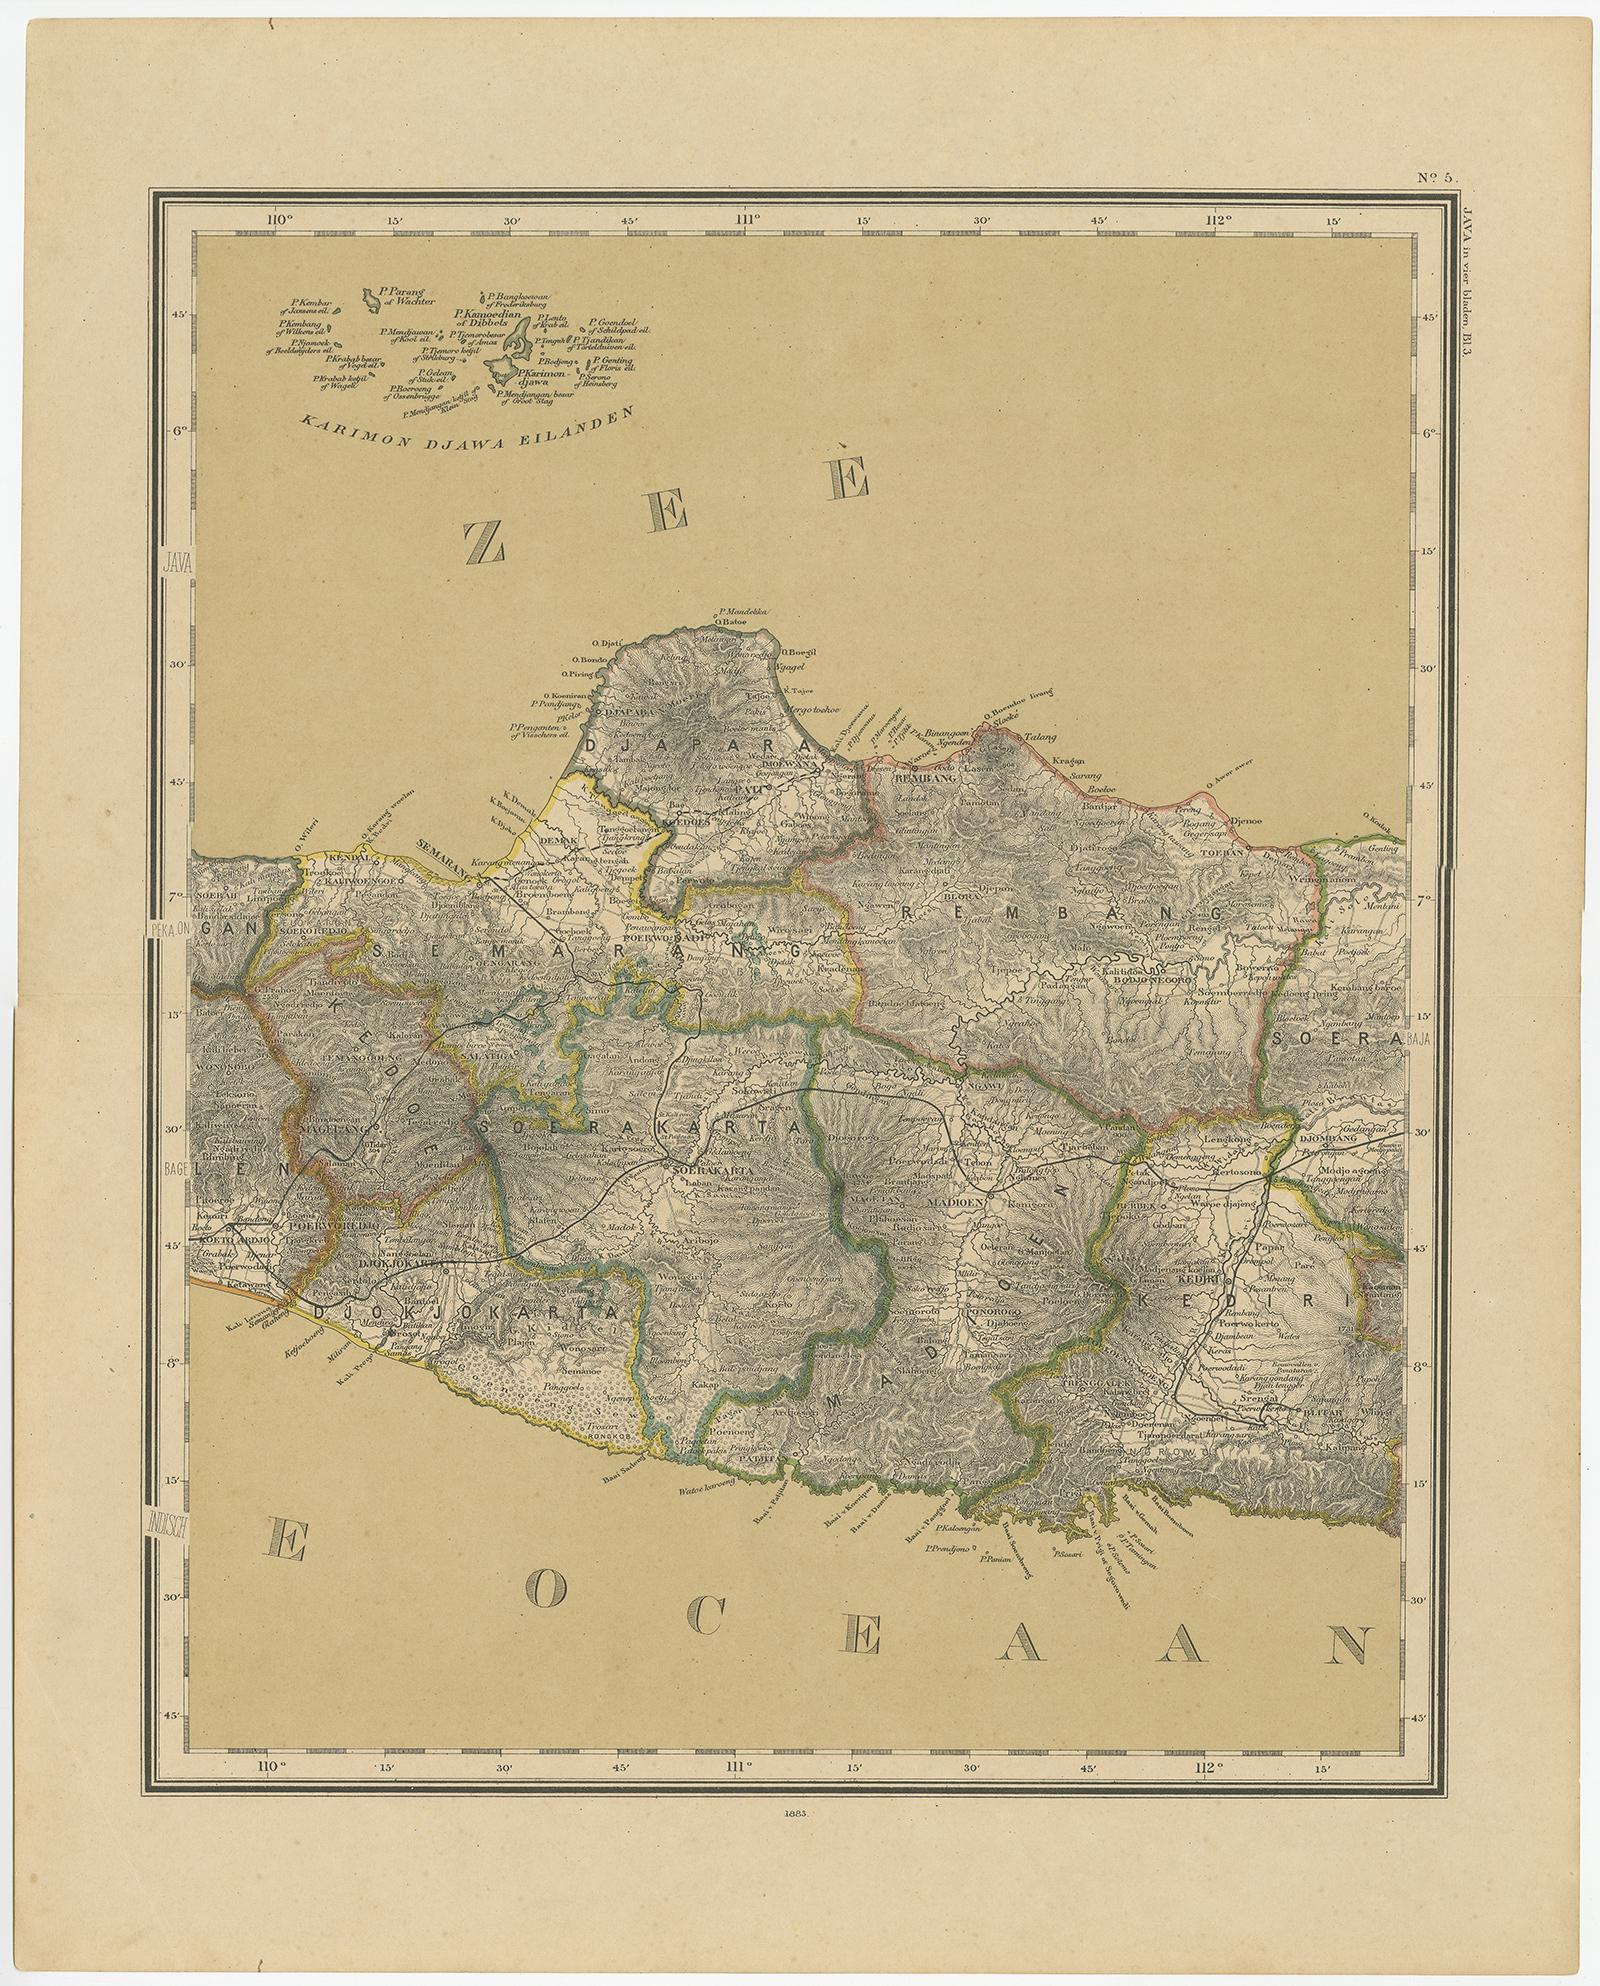 Carte détaillée de Java en 4 feuilles, avec un encart de Batavia (Jakarta). Cette carte provient de l'